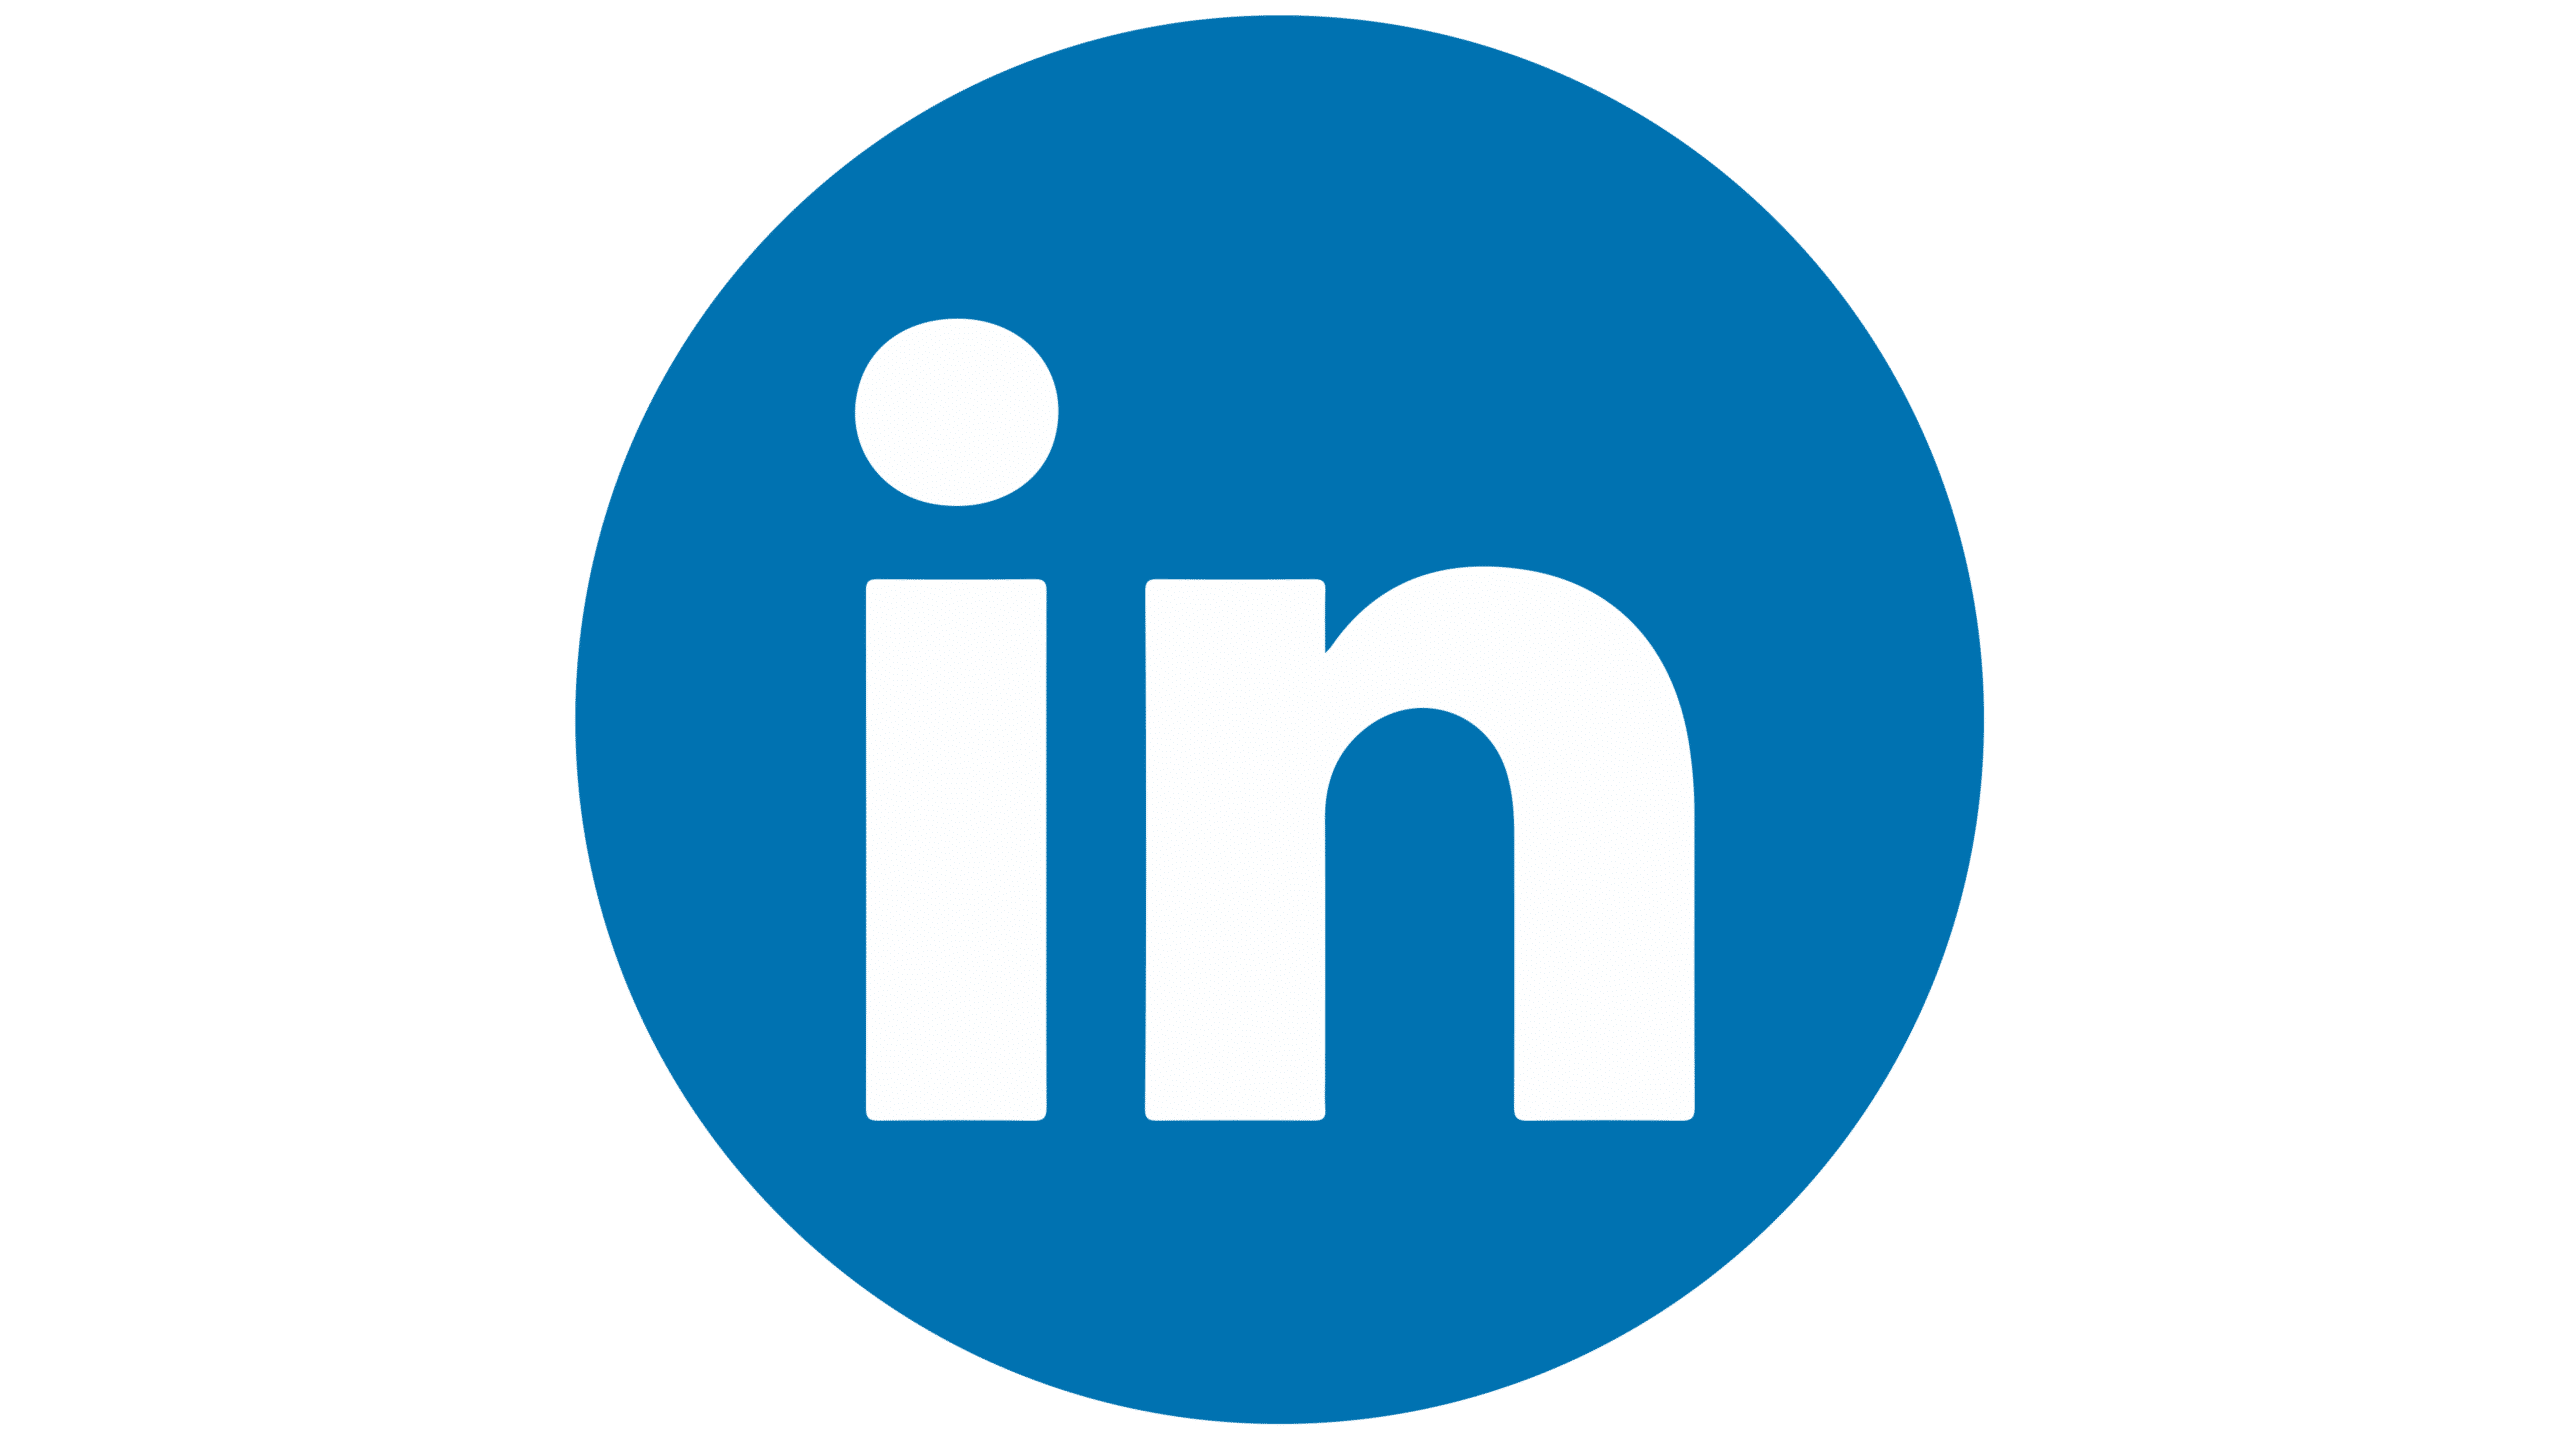 LinkedIn-logo - Gratis download in PNG-indeling (2022)